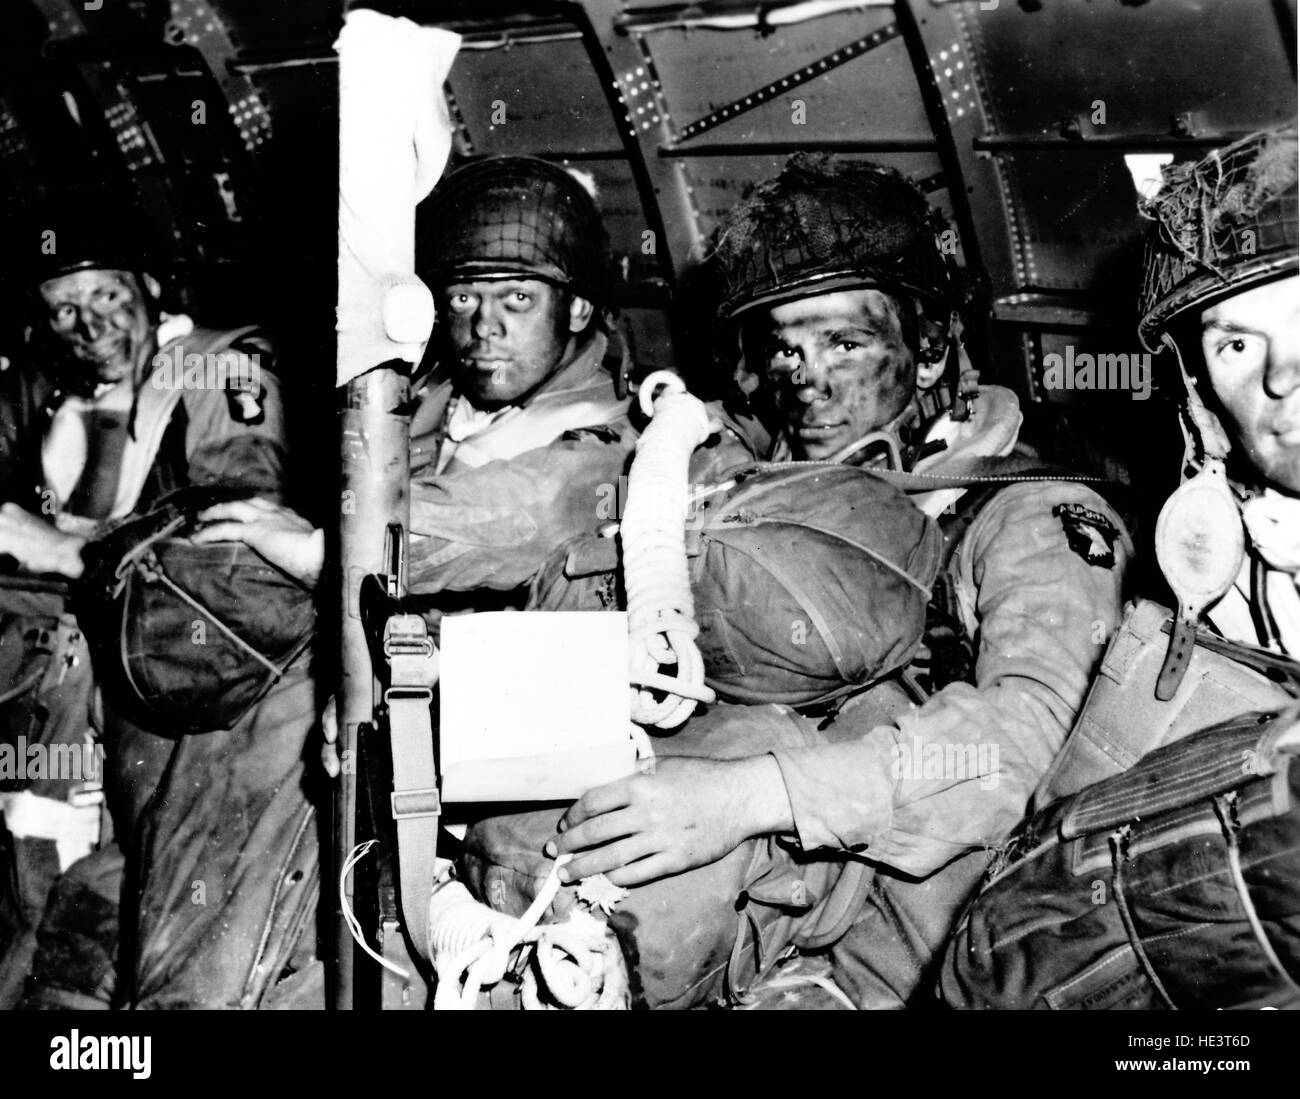 Normandie, Frankreich, 6. Juni 1944. Fallschirmjäger der 101. Airborne Division "Schreien" Adler, an Bord einer c-47 vor dem Start Stockfoto